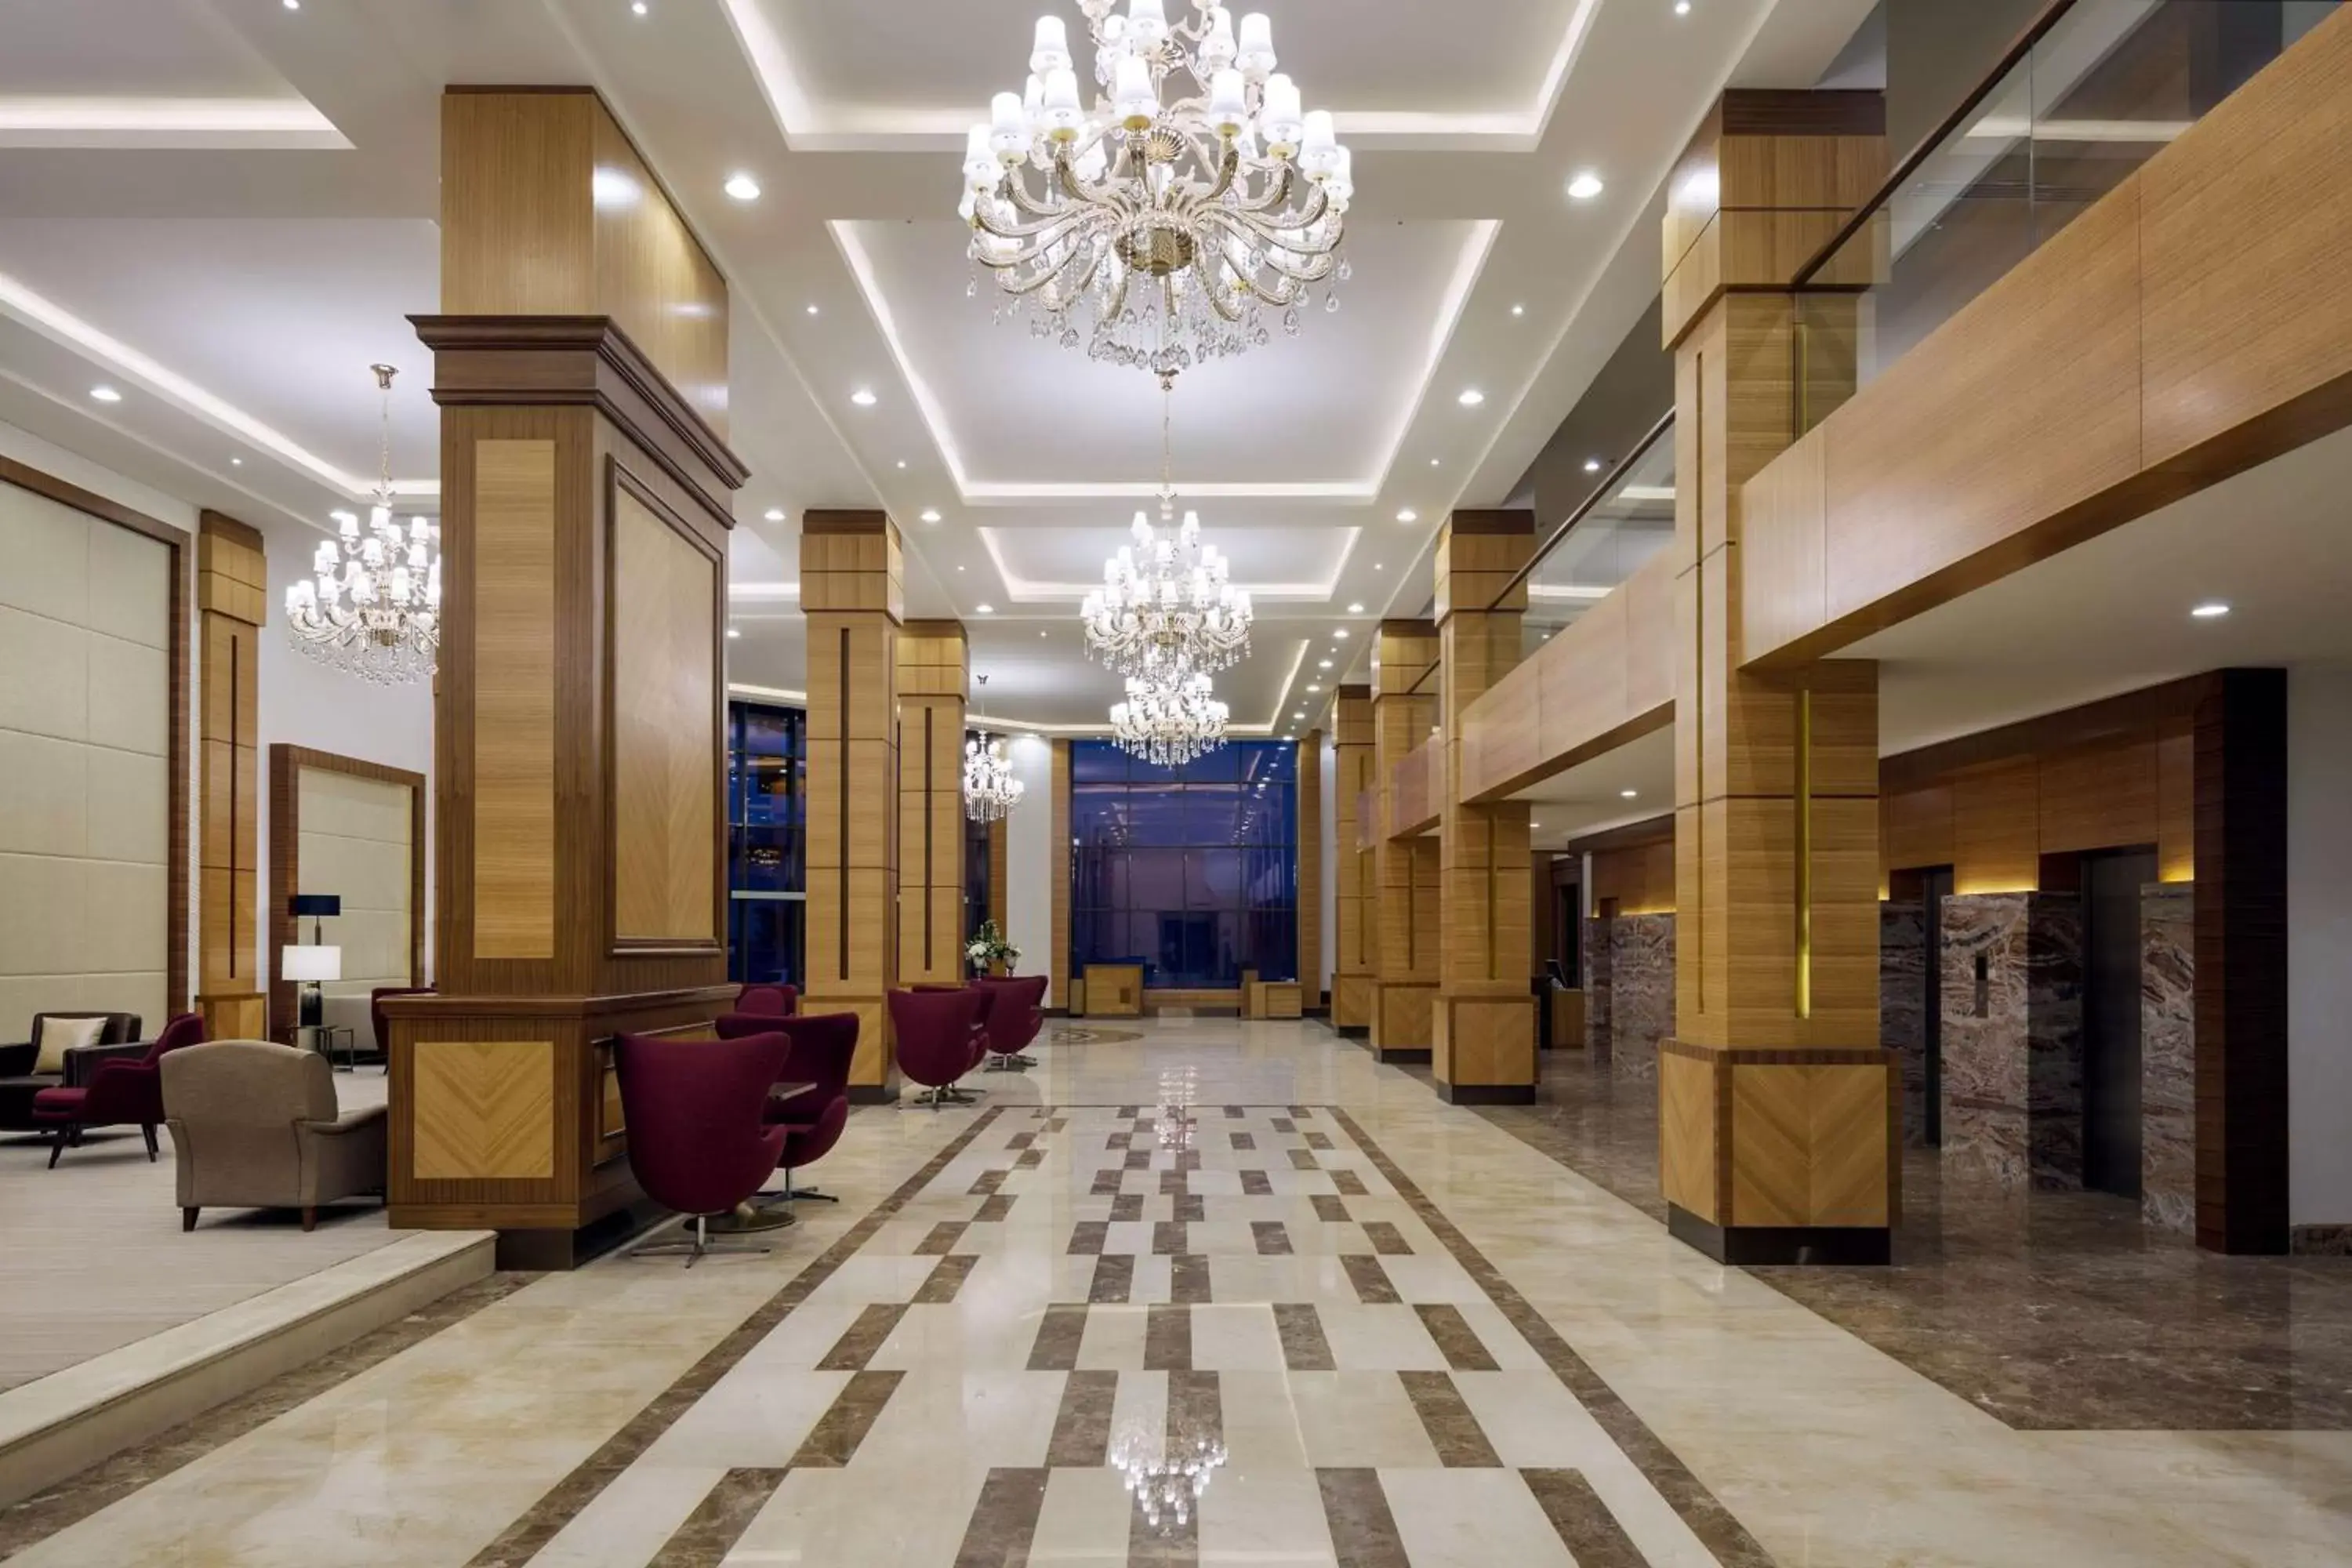 On site, Lobby/Reception in Radisson Blu Hotel, Buraidah